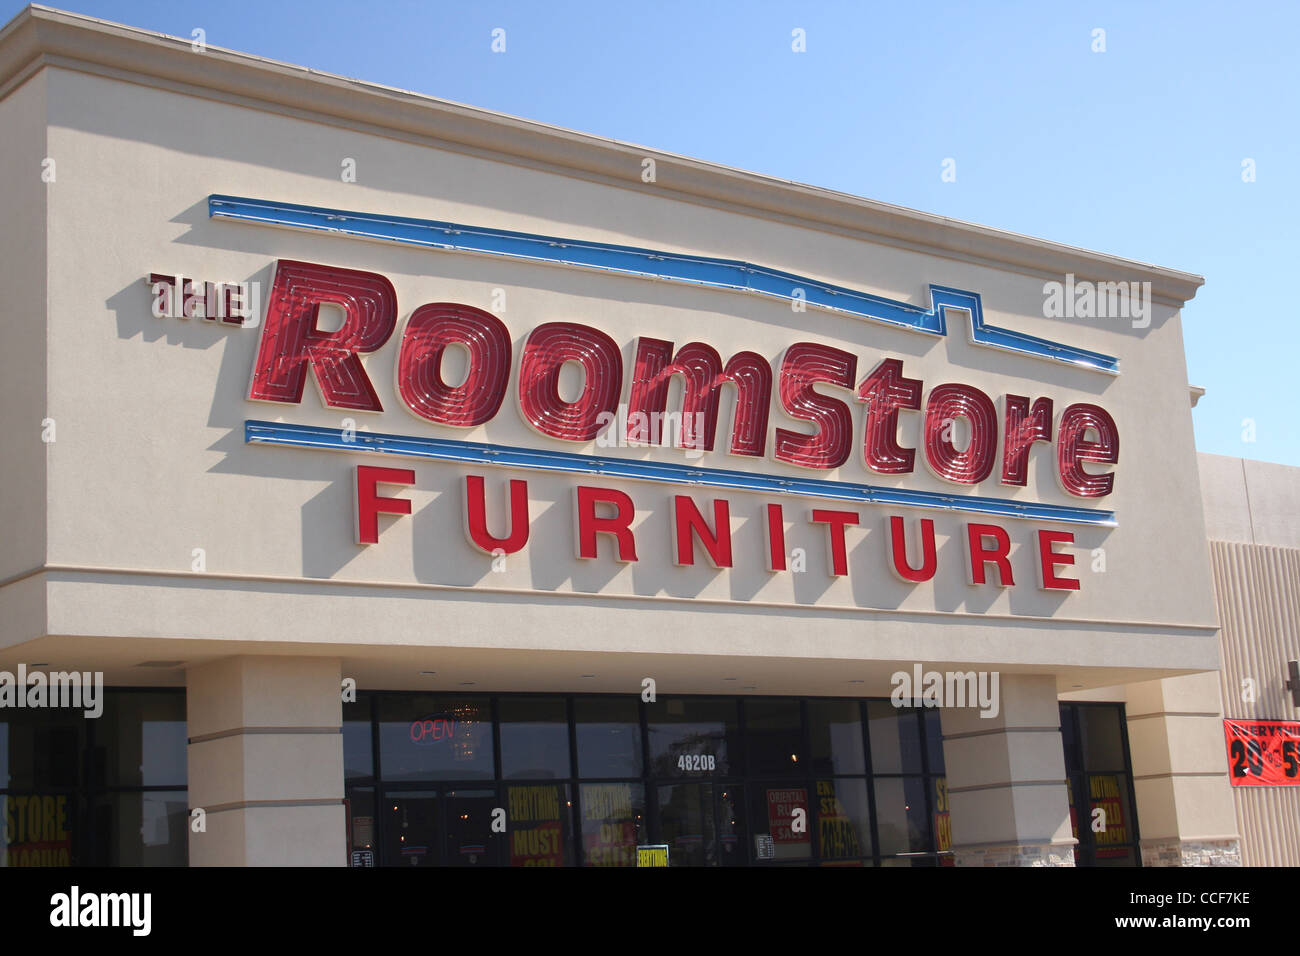 Roomstore furniture store closing sale fotografías e imágenes de alta  resolución - Alamy